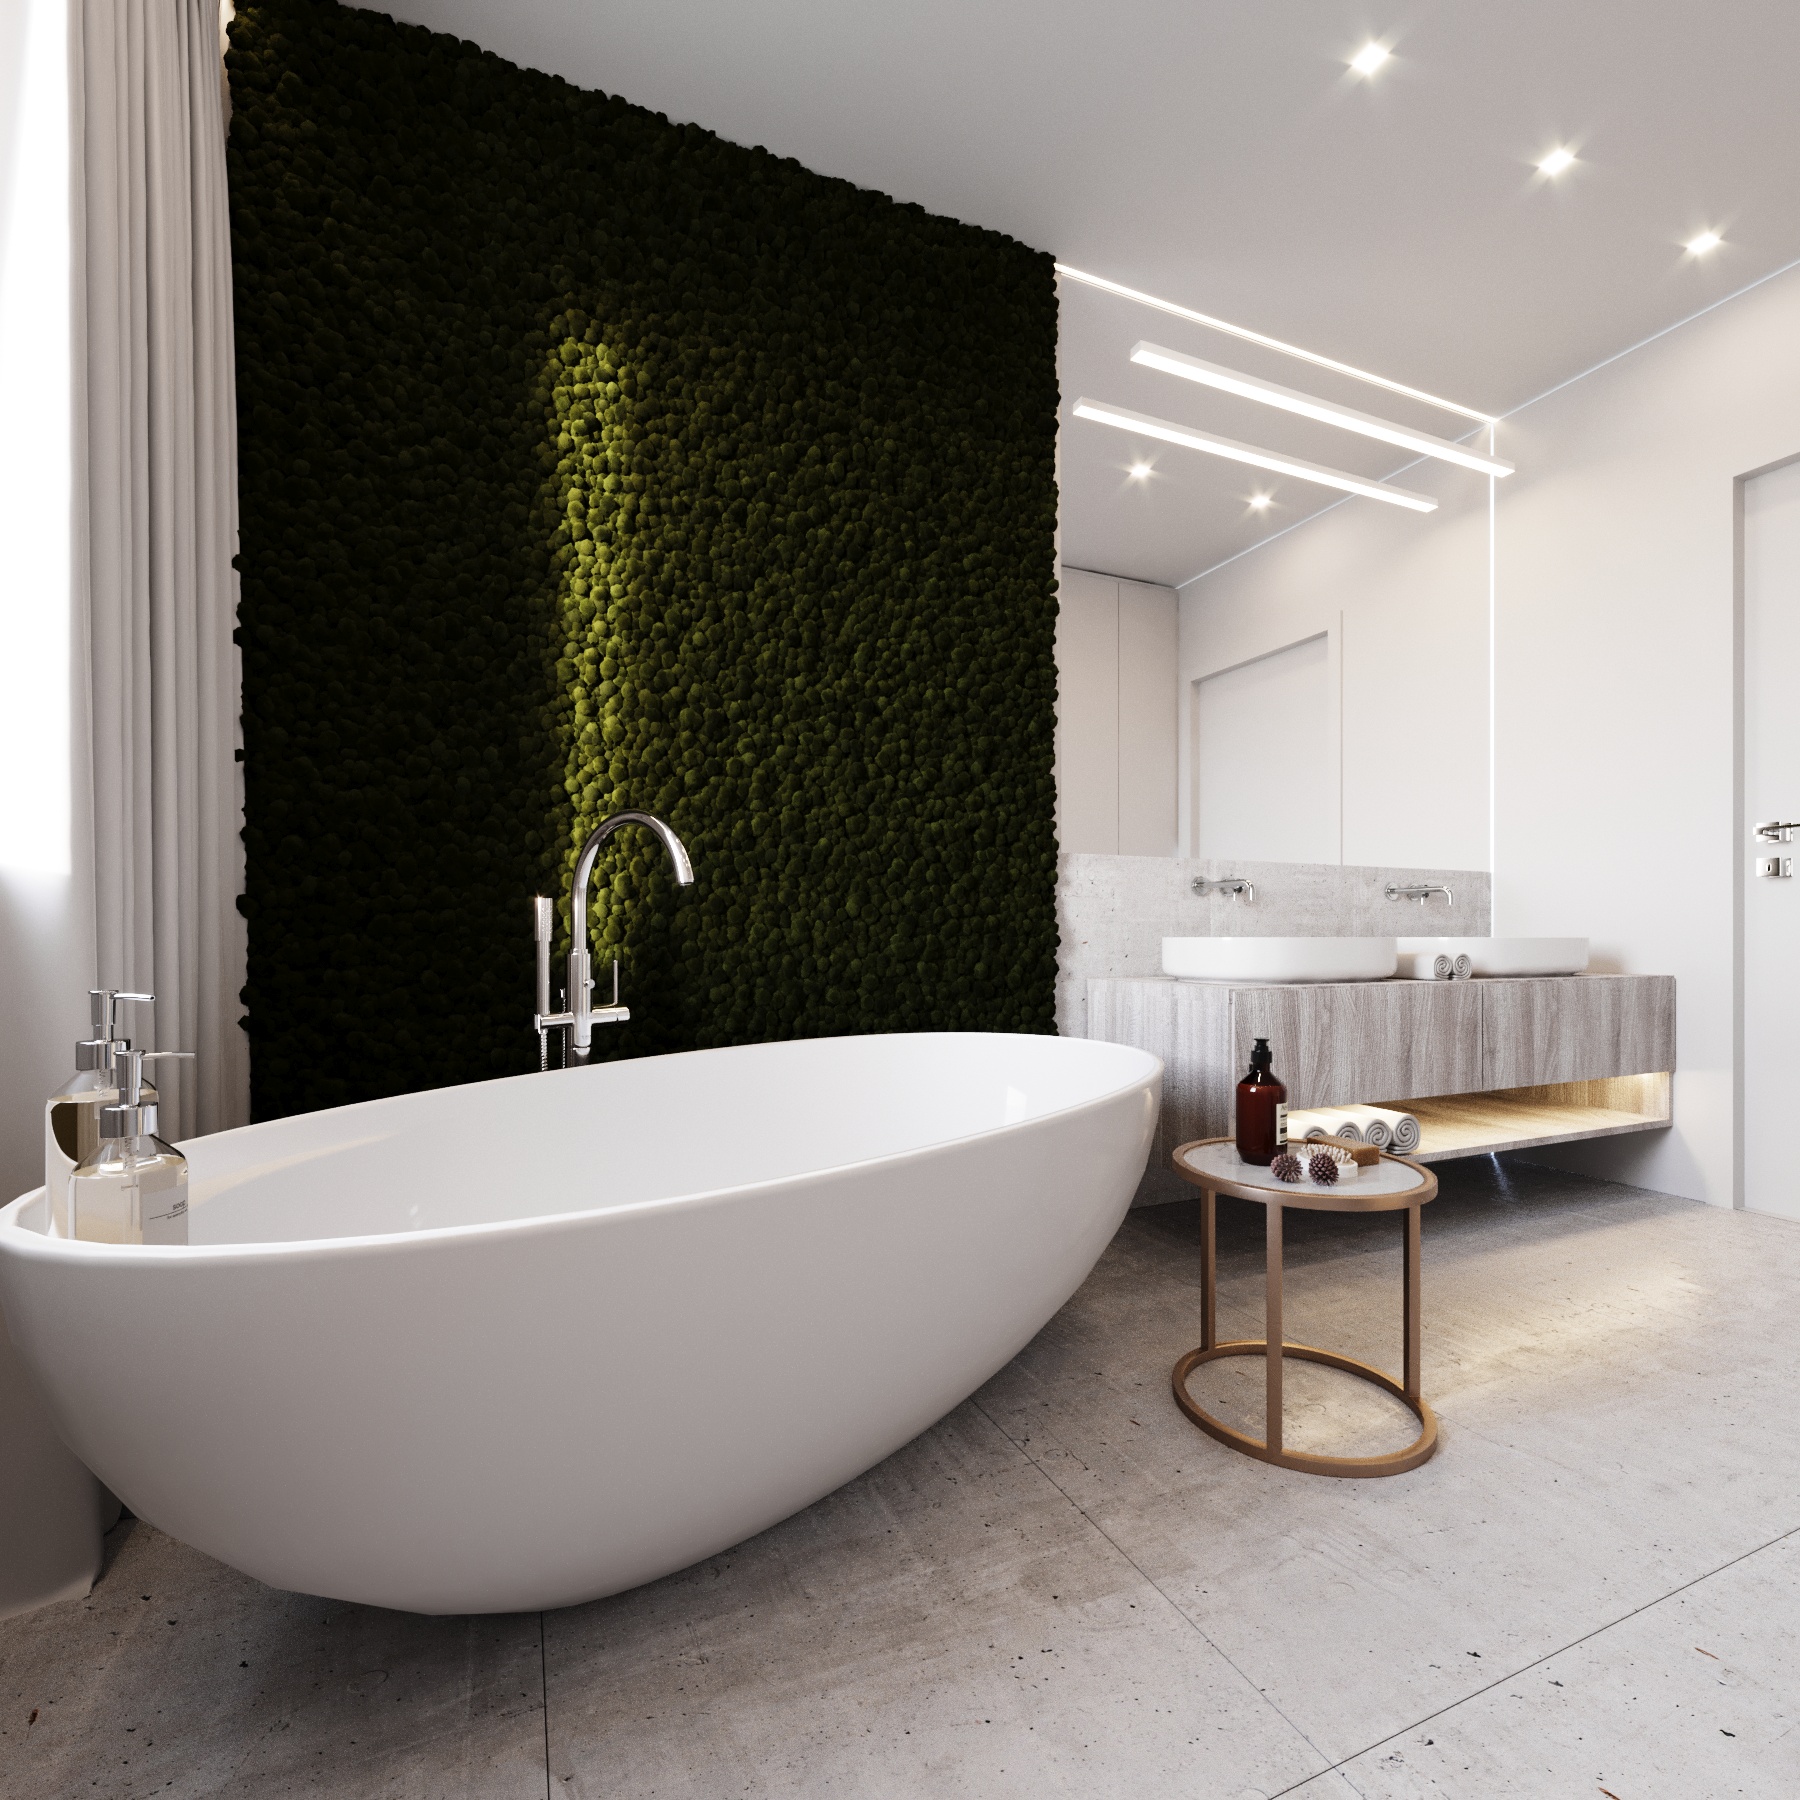 Projekt łazienki wykonany przez Studio Projektowe Paulina Lalak, w którym zastosowano elementy mchu jako naturalną dekorację ściany.